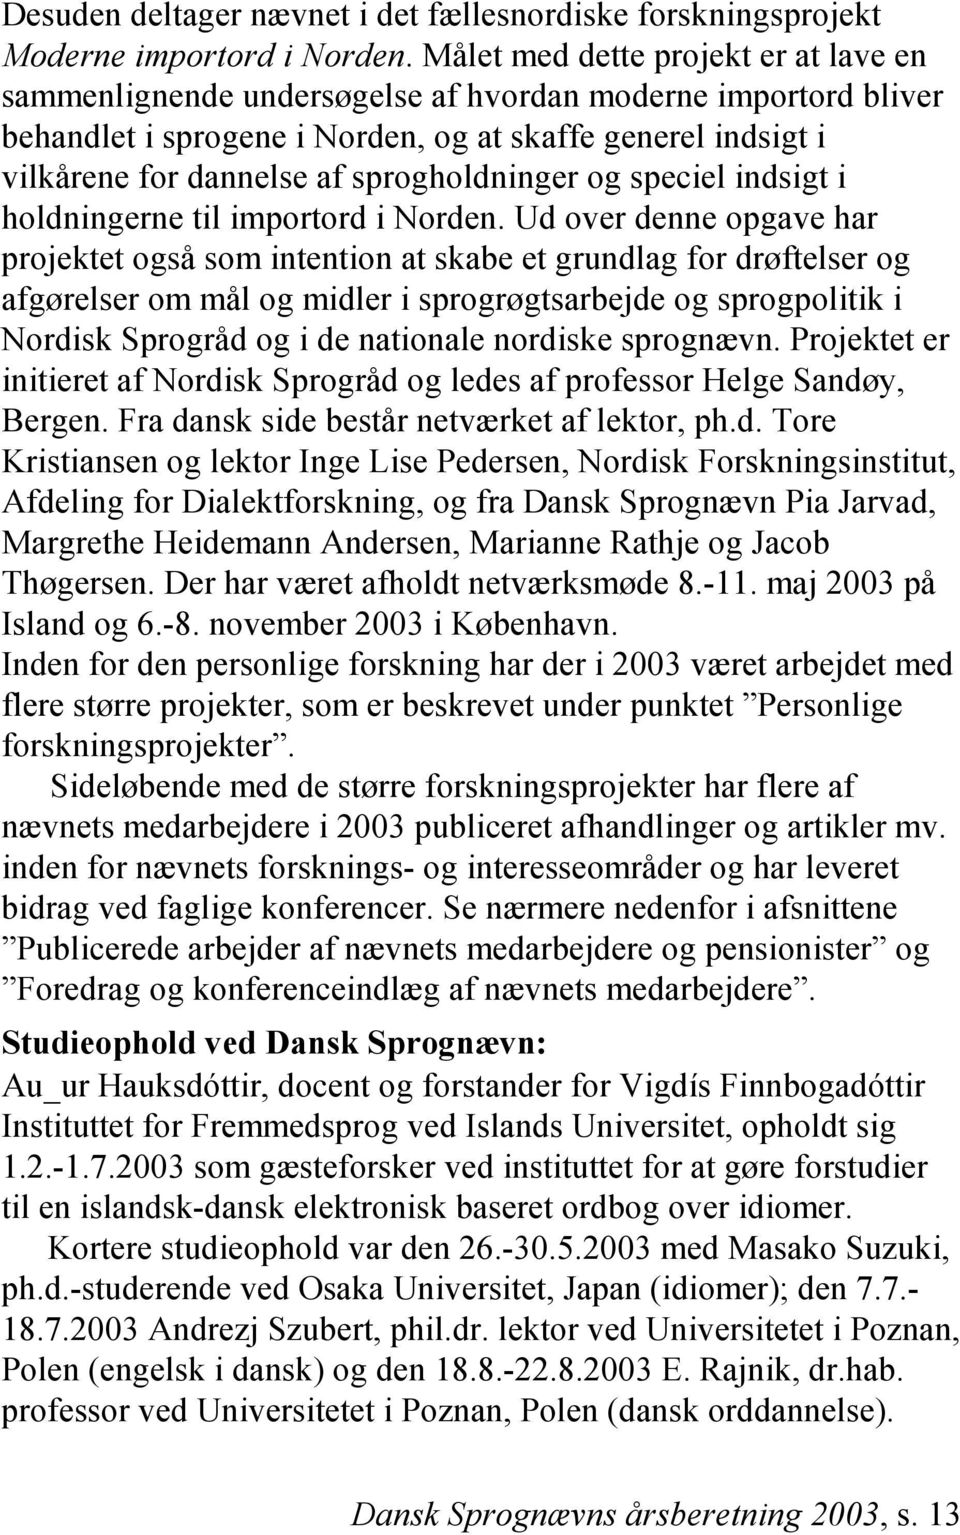 sprogholdninger og speciel indsigt i holdningerne til importord i Norden.